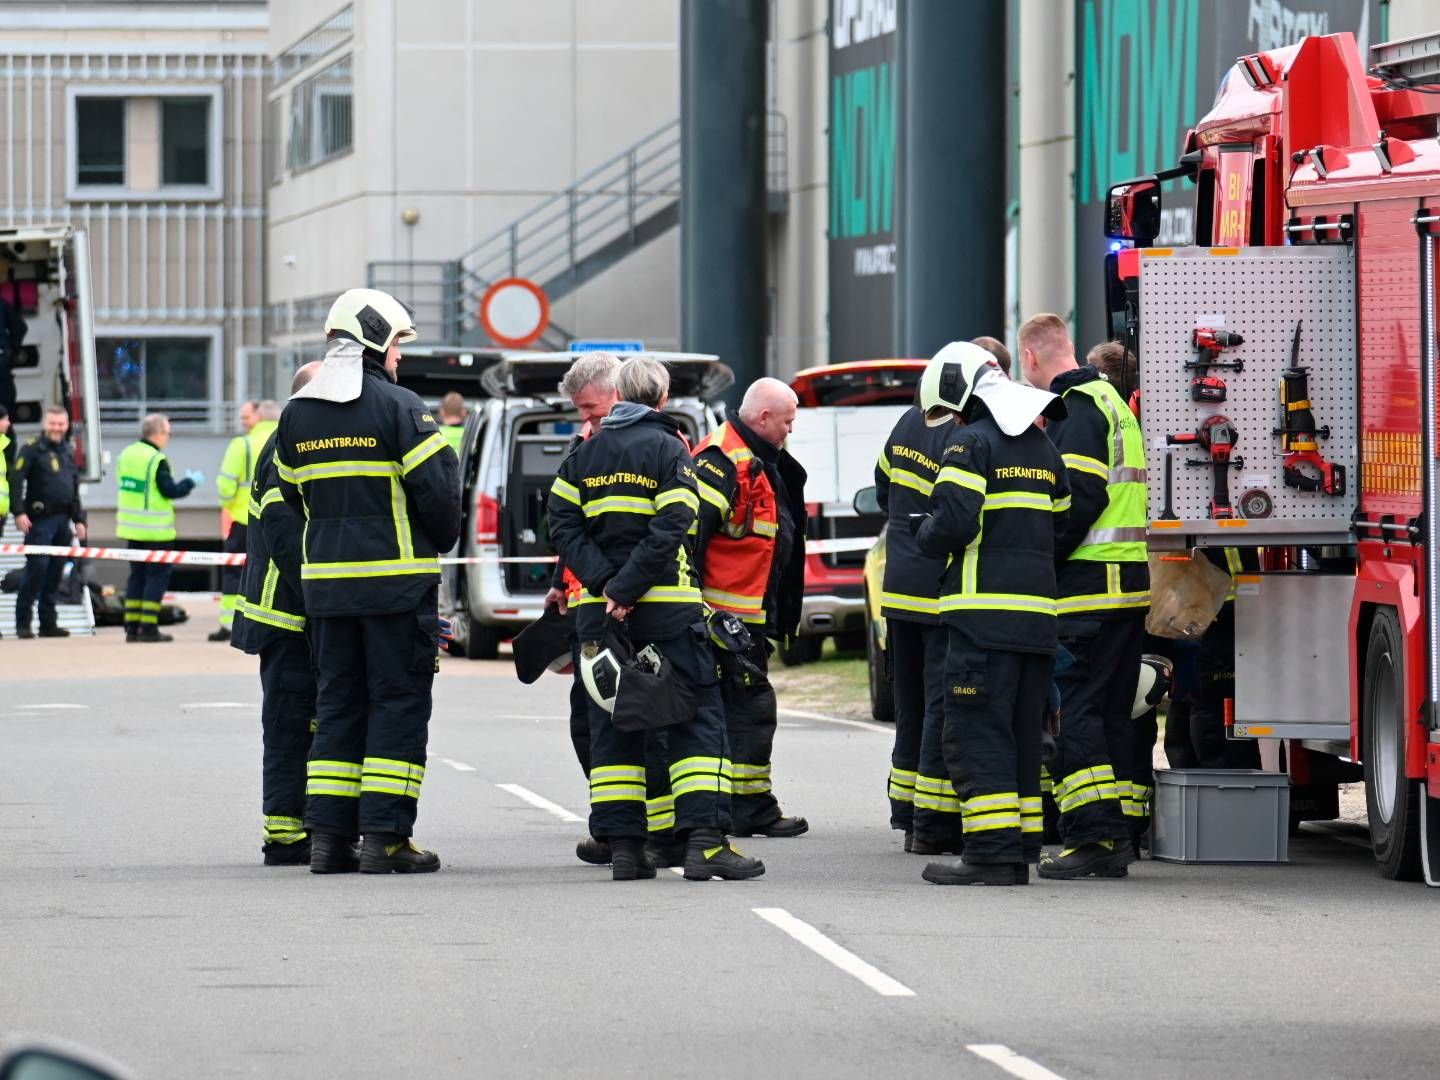 Billund Lufthavn blev lørdag formiddag udsat for en bombetrussel, der lukkede lufthavnen stort set hele dagen. | Foto: Pressefotos.dk/Ritzau Scanpix